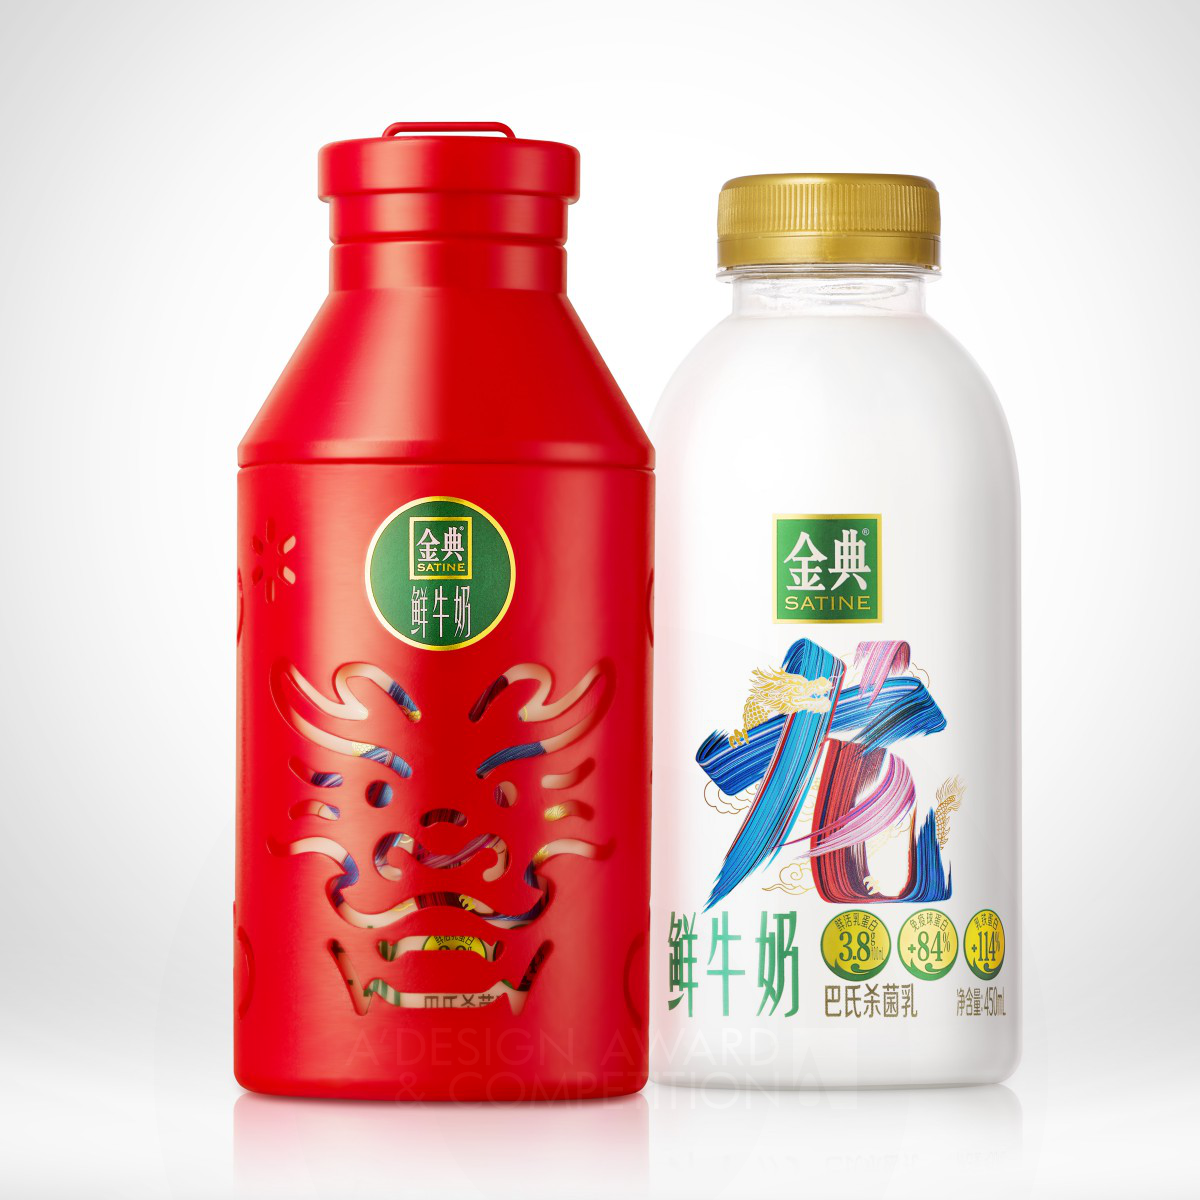 Satine Fresh Milk Interactive Packaging by Satine fresh milk & Pesign